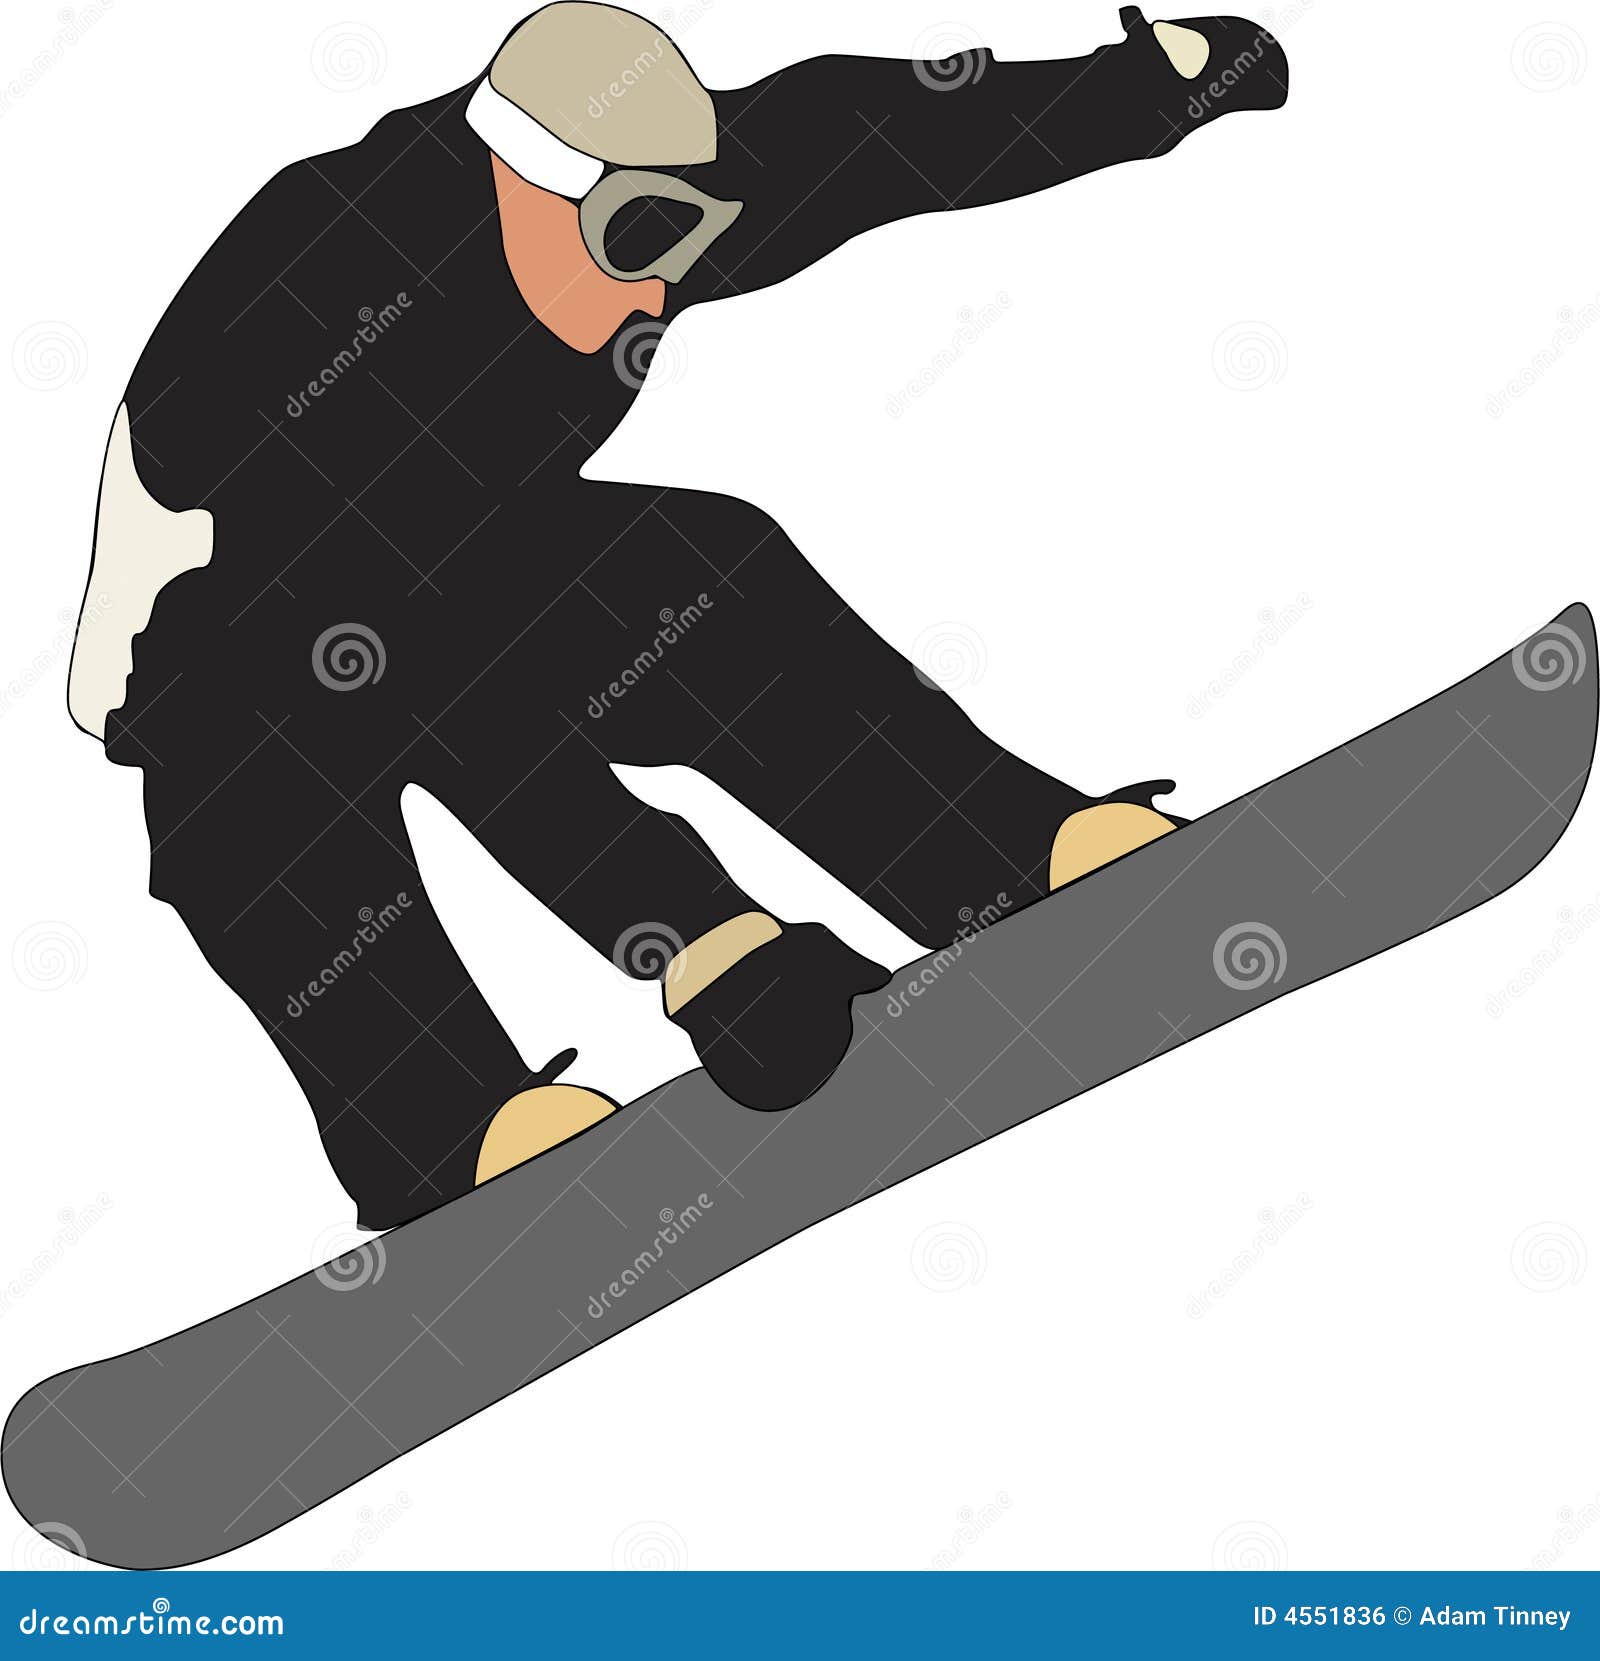 Snowboarder. Ilustración del Snowboard que hace un gancho agarrador en el aire.